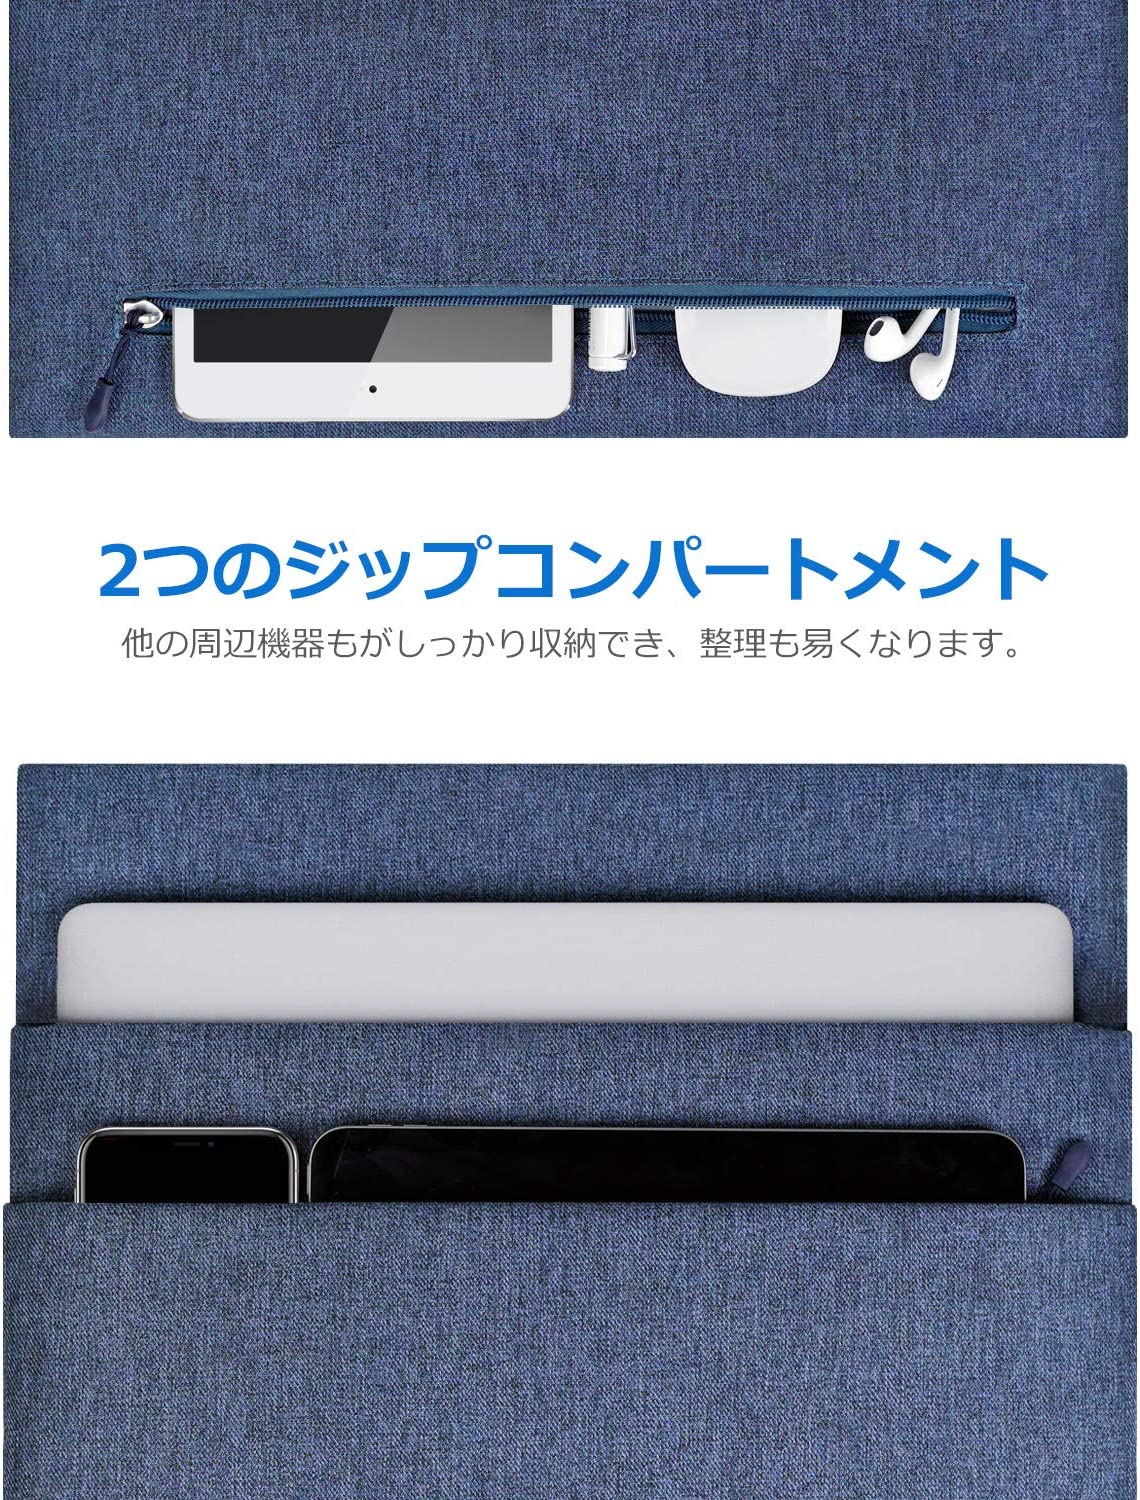 16インチ MacBook Pro/ MacBook Pro Retina ラップトップスリーブ LC1503，blue - Inateckバックパックジャパン